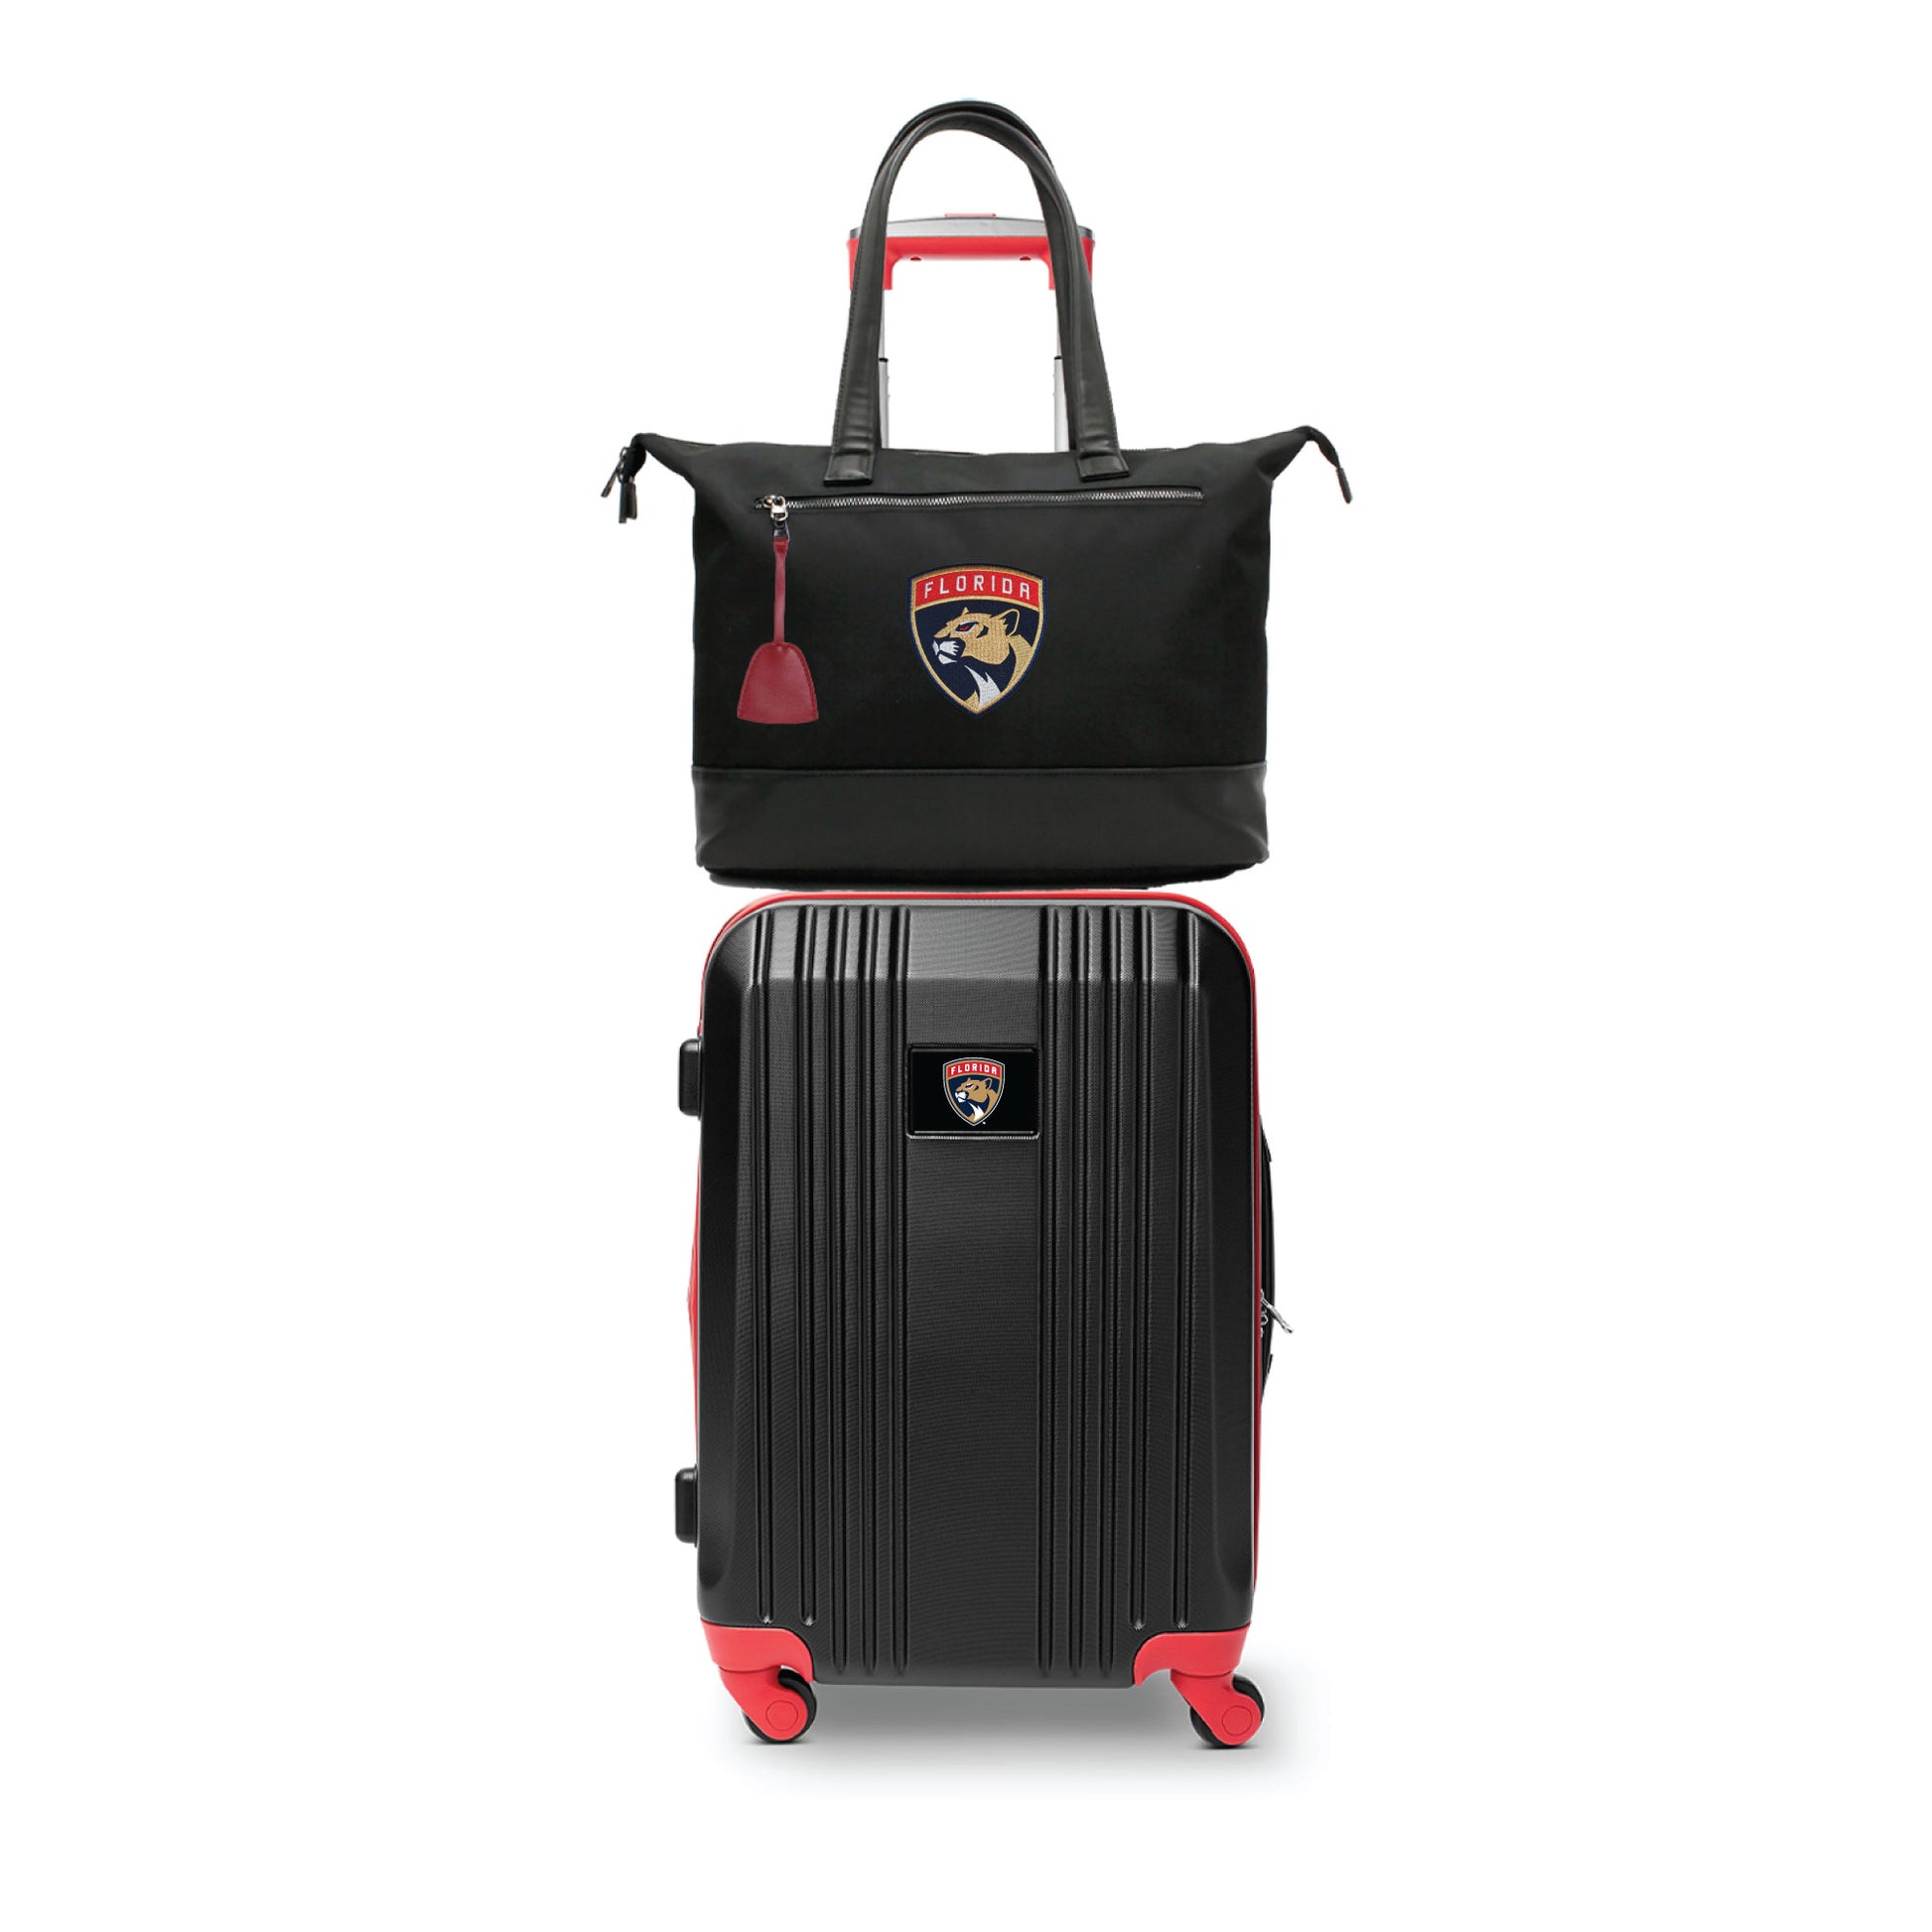 Florida Panthers Premium Laptop Tote Bag and Luggage Set